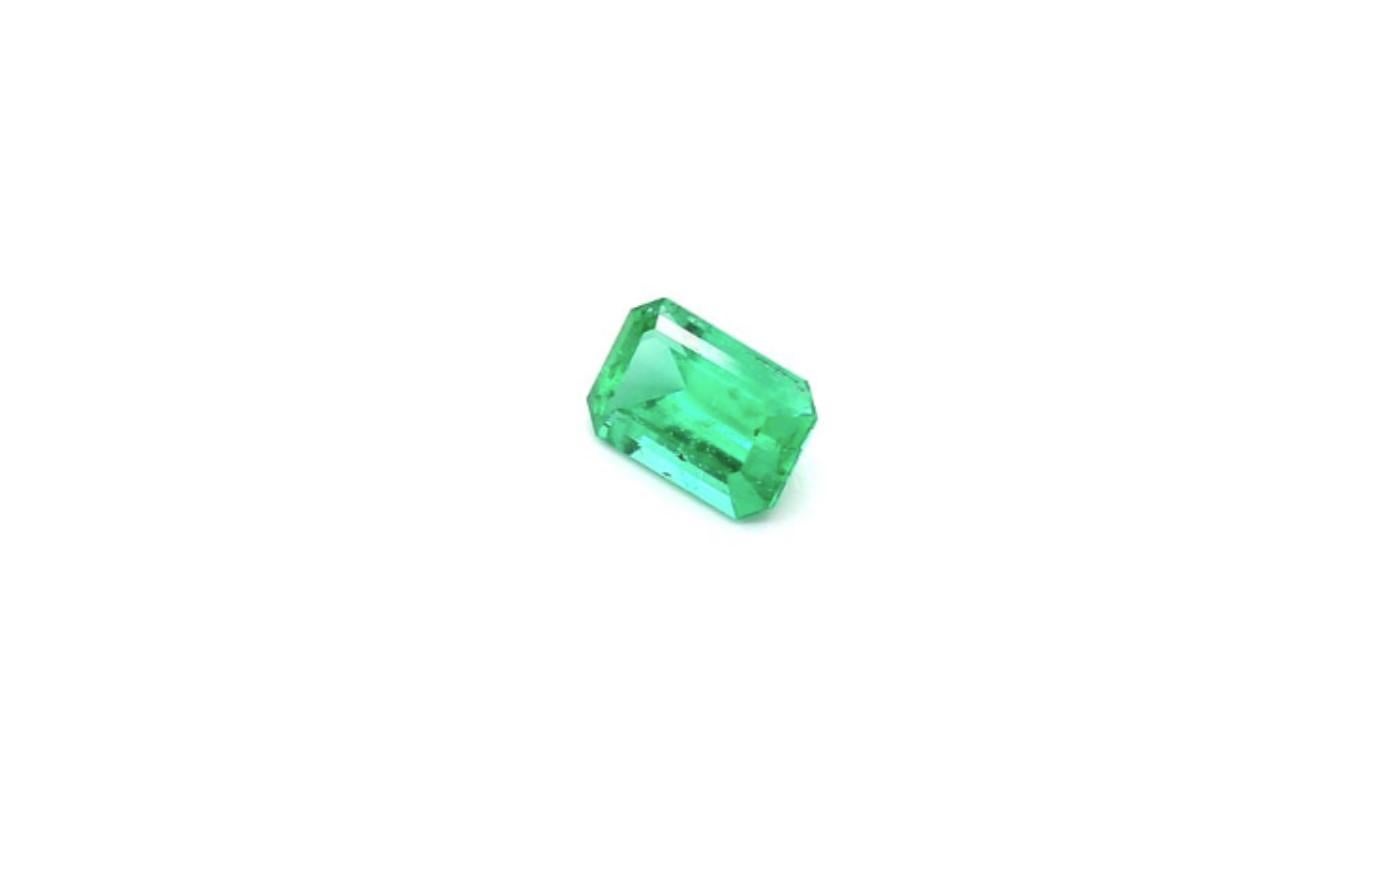 Octagon Cut Intense Green Emerald Cut Emerald Ring Gem 0.54 Carat Weight For Sale